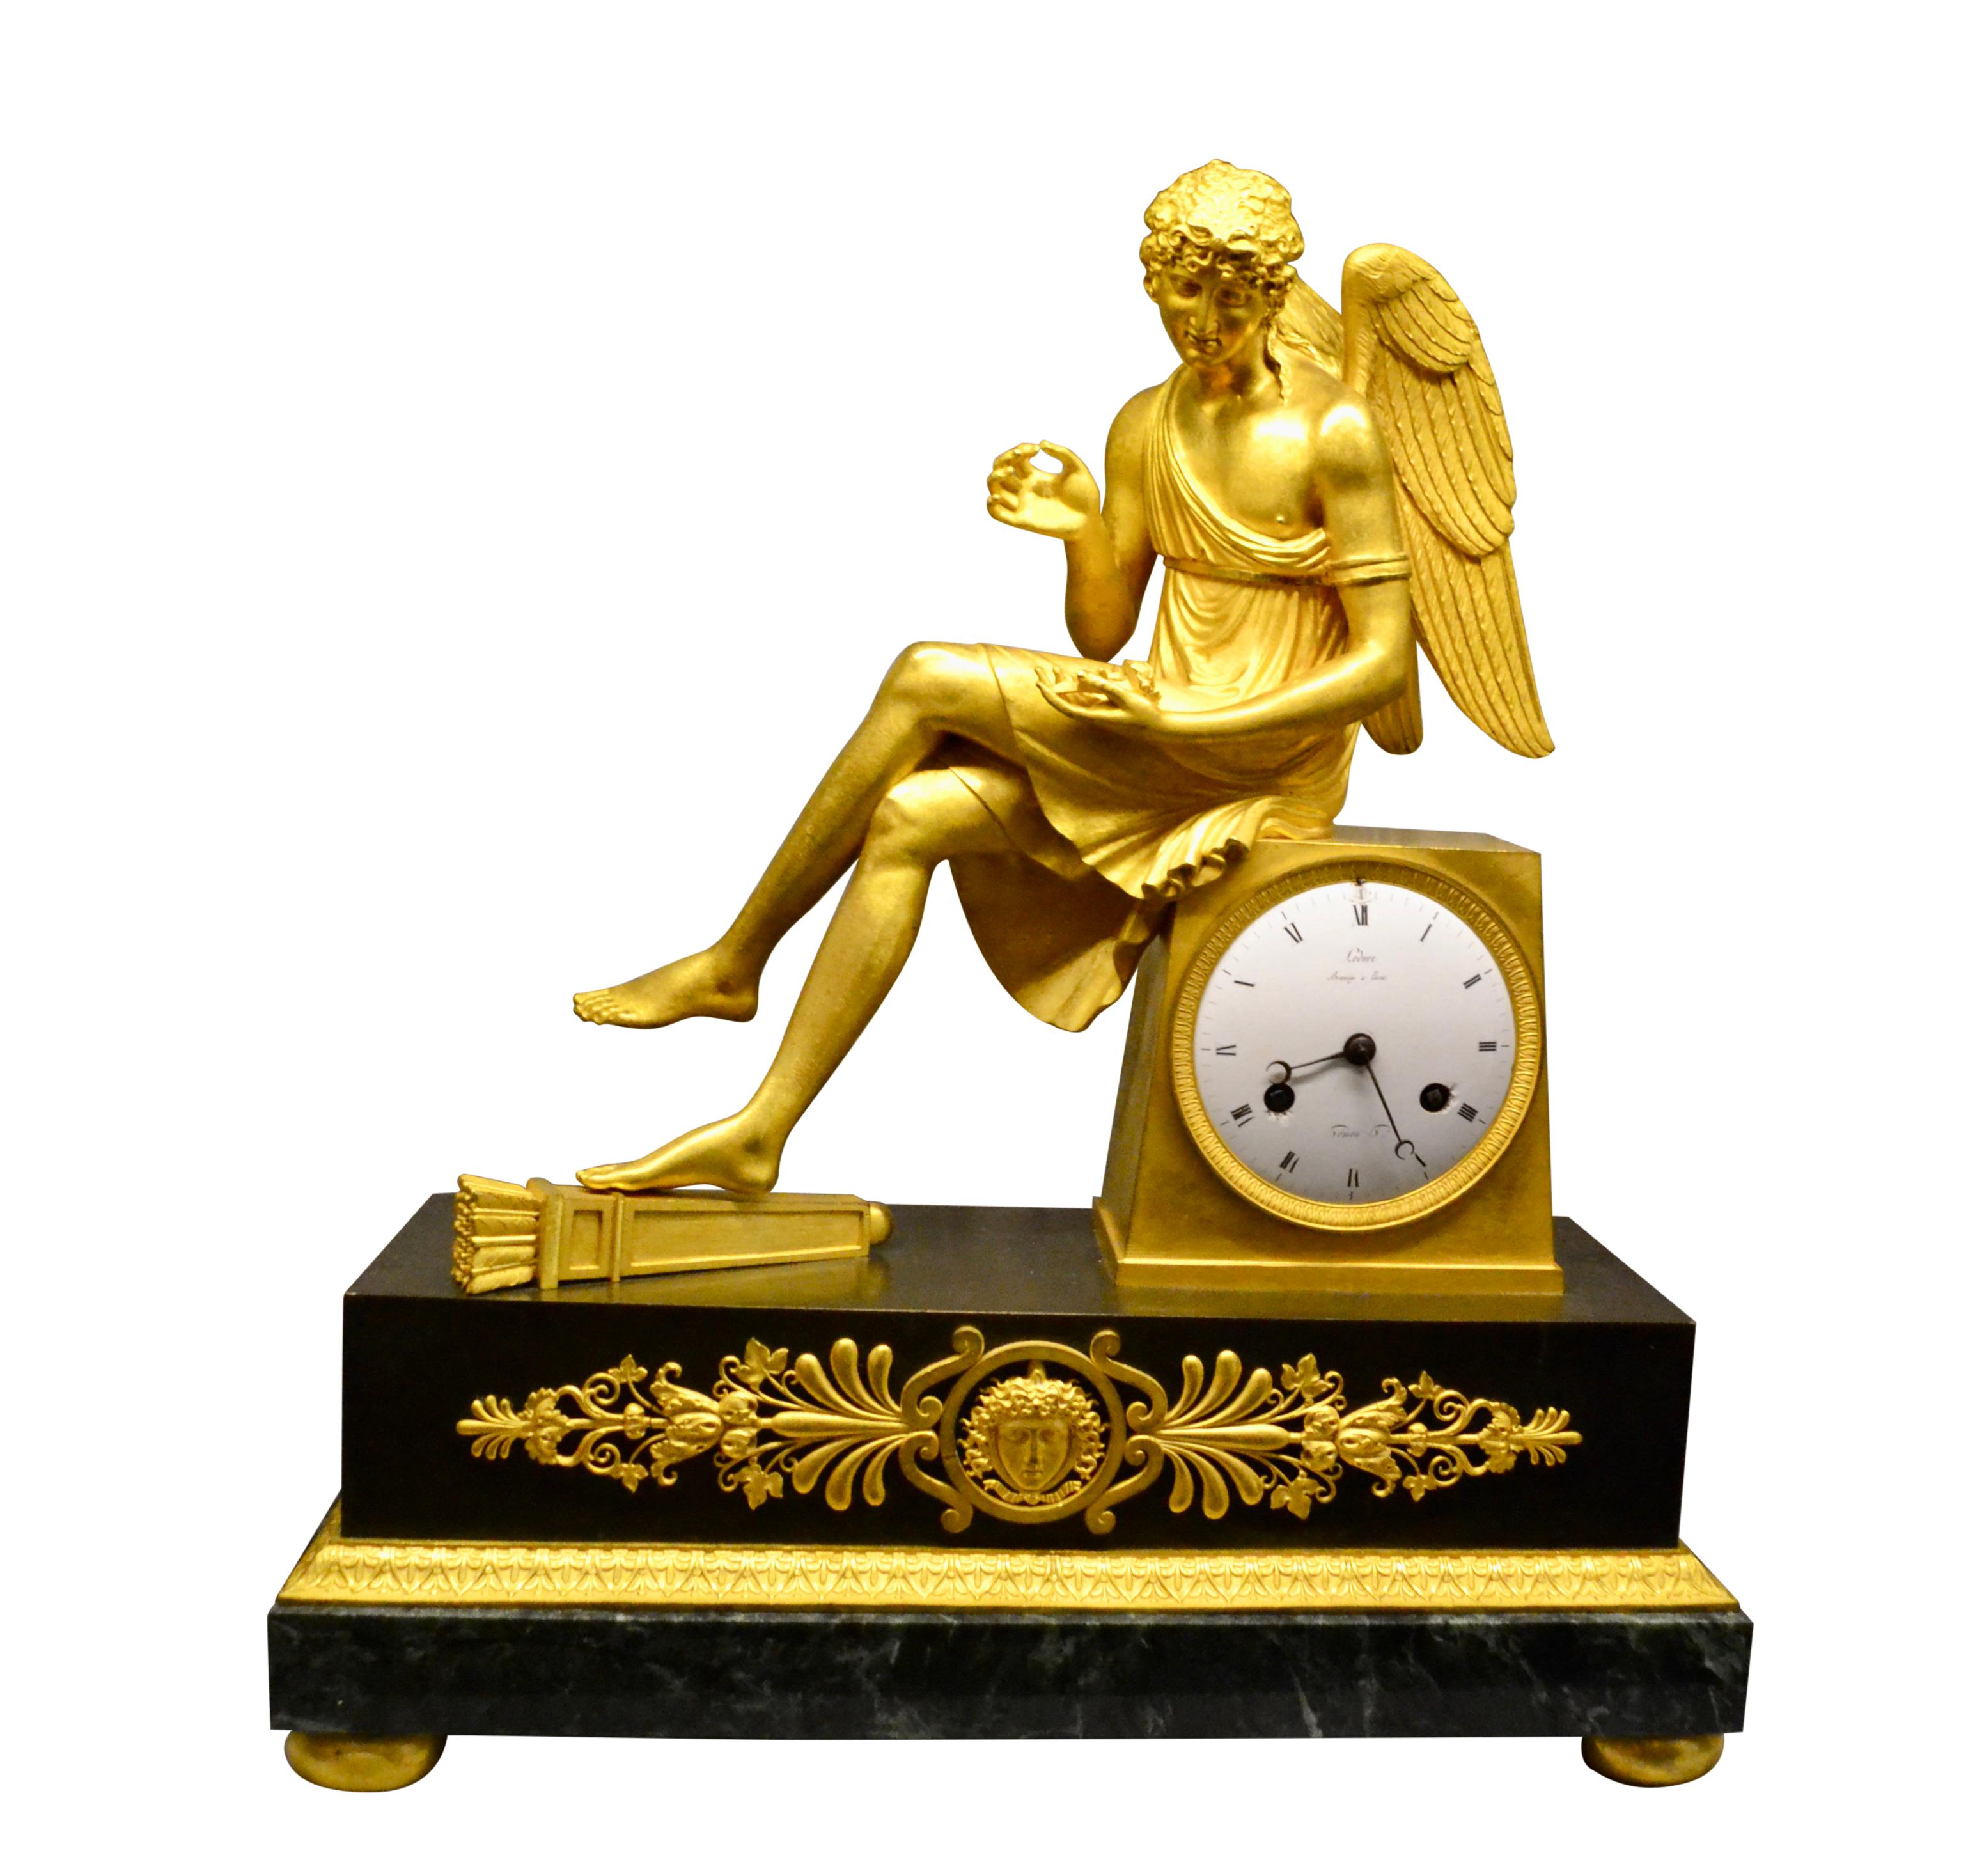 Französische Empire-Uhr in feinster Qualität, die einen sitzenden, geflügelten Amor mit einer Rose darstellt; das Gehäuse ist aus vergoldeter und patinierter Bronze. Die Uhr zeigt einen vergoldeten Amor, der im Schneidersitz auf dem Uhrensockel